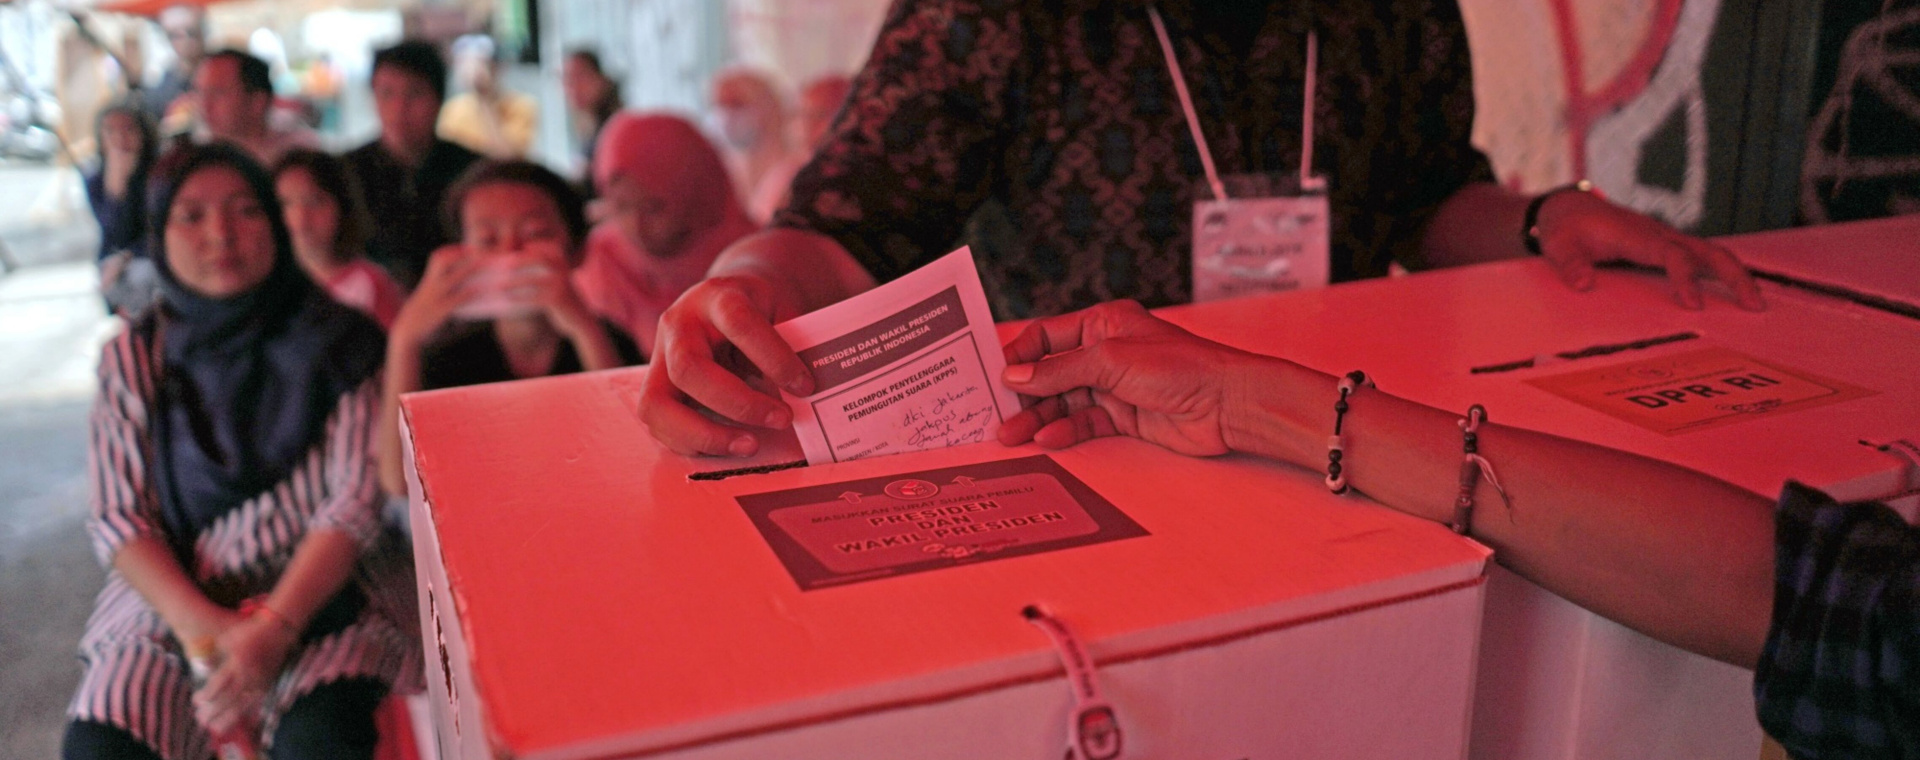  Survei SMRC: Politik Uang Hanya Berpengaruh Untuk 1 dari 10 Pemilih